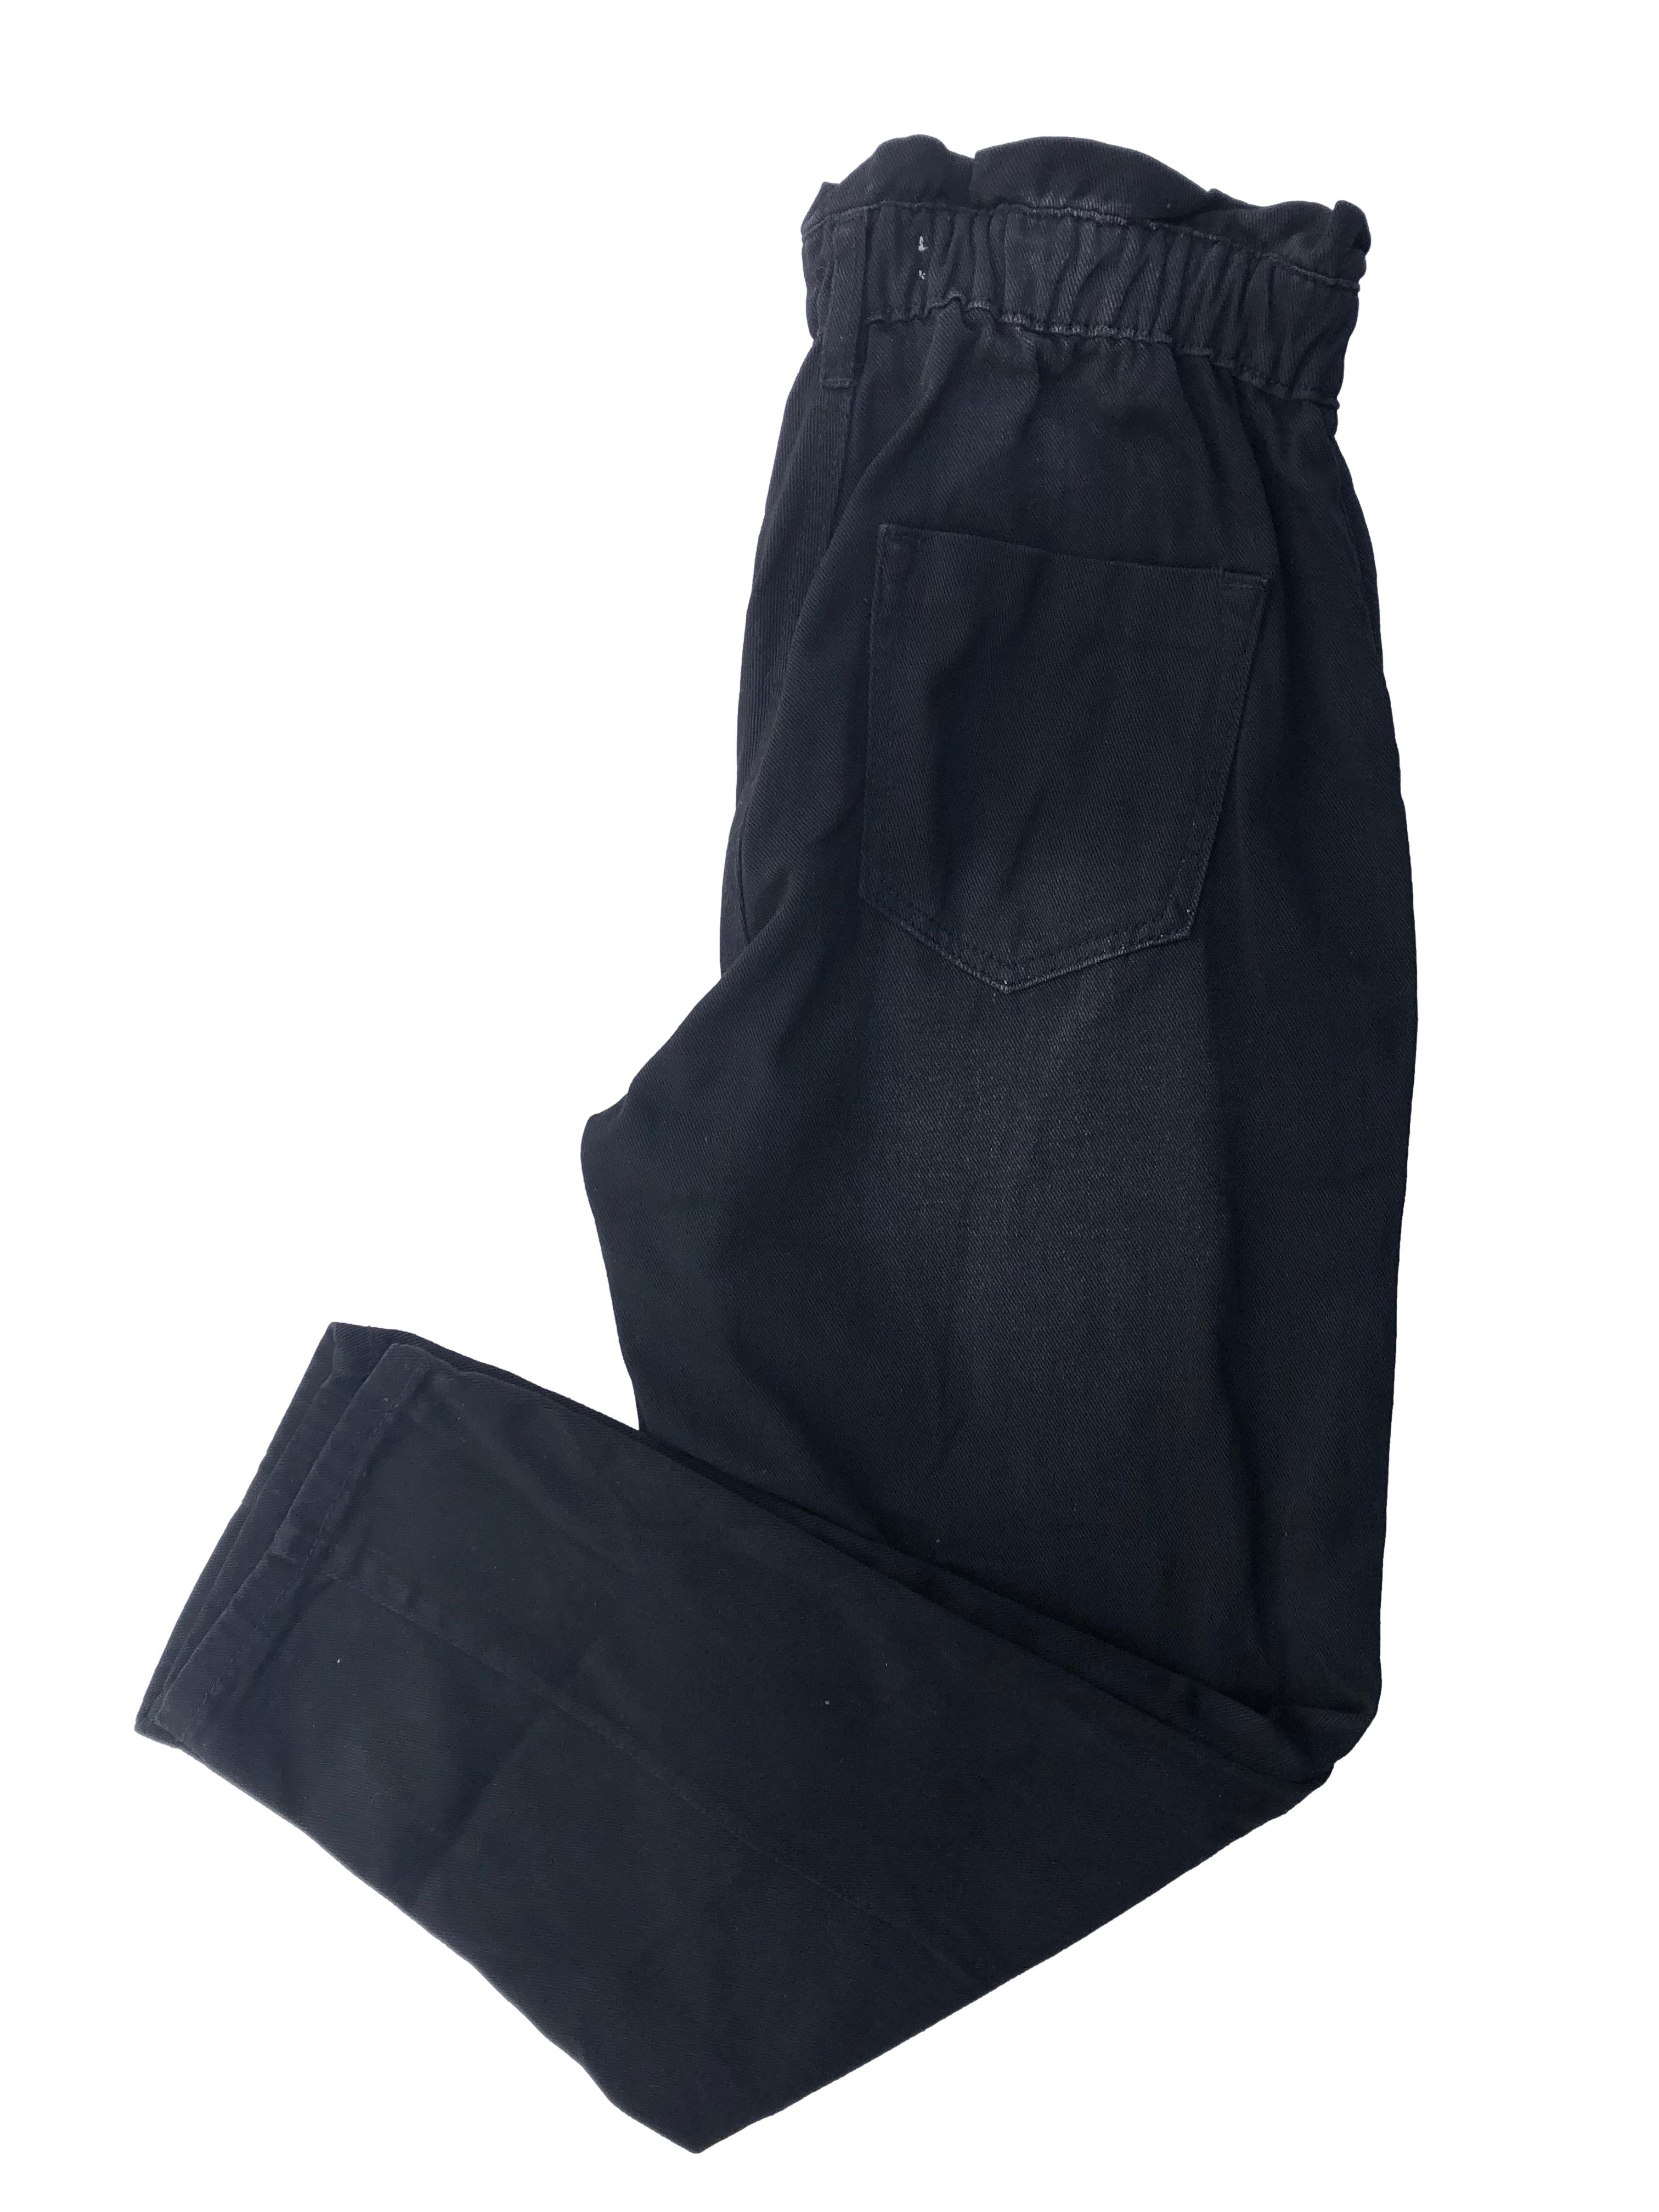 Paper bag jean negro Basement efecto lavado, de tiro alto con pretina elasticada y cuatro bolsillos. Cintura 64cm, Largo 95cm.